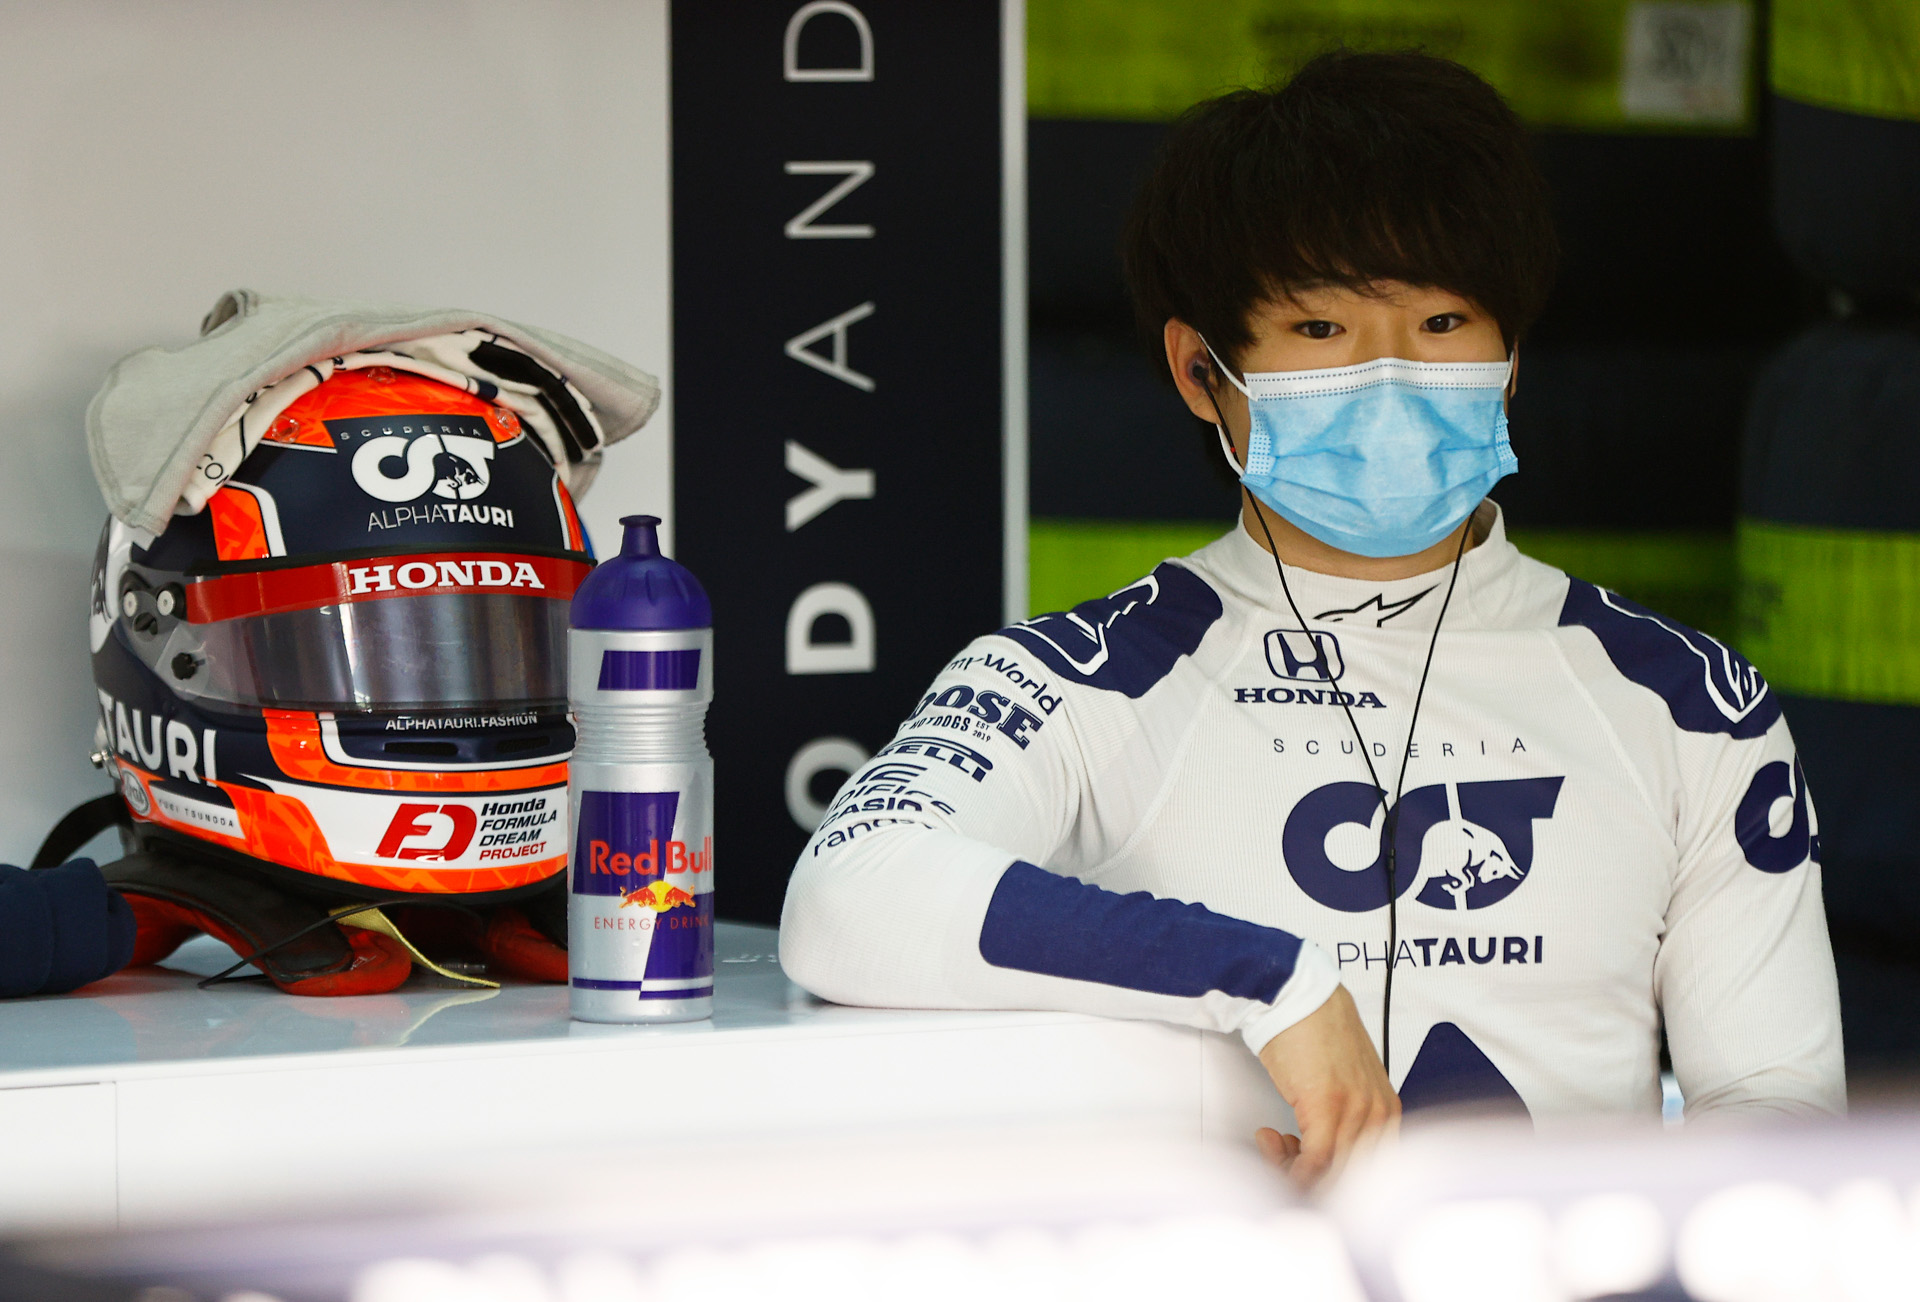 F1昇格を有望視される角田裕毅選手、F1マシン「トロロッソ・ホンダ」で